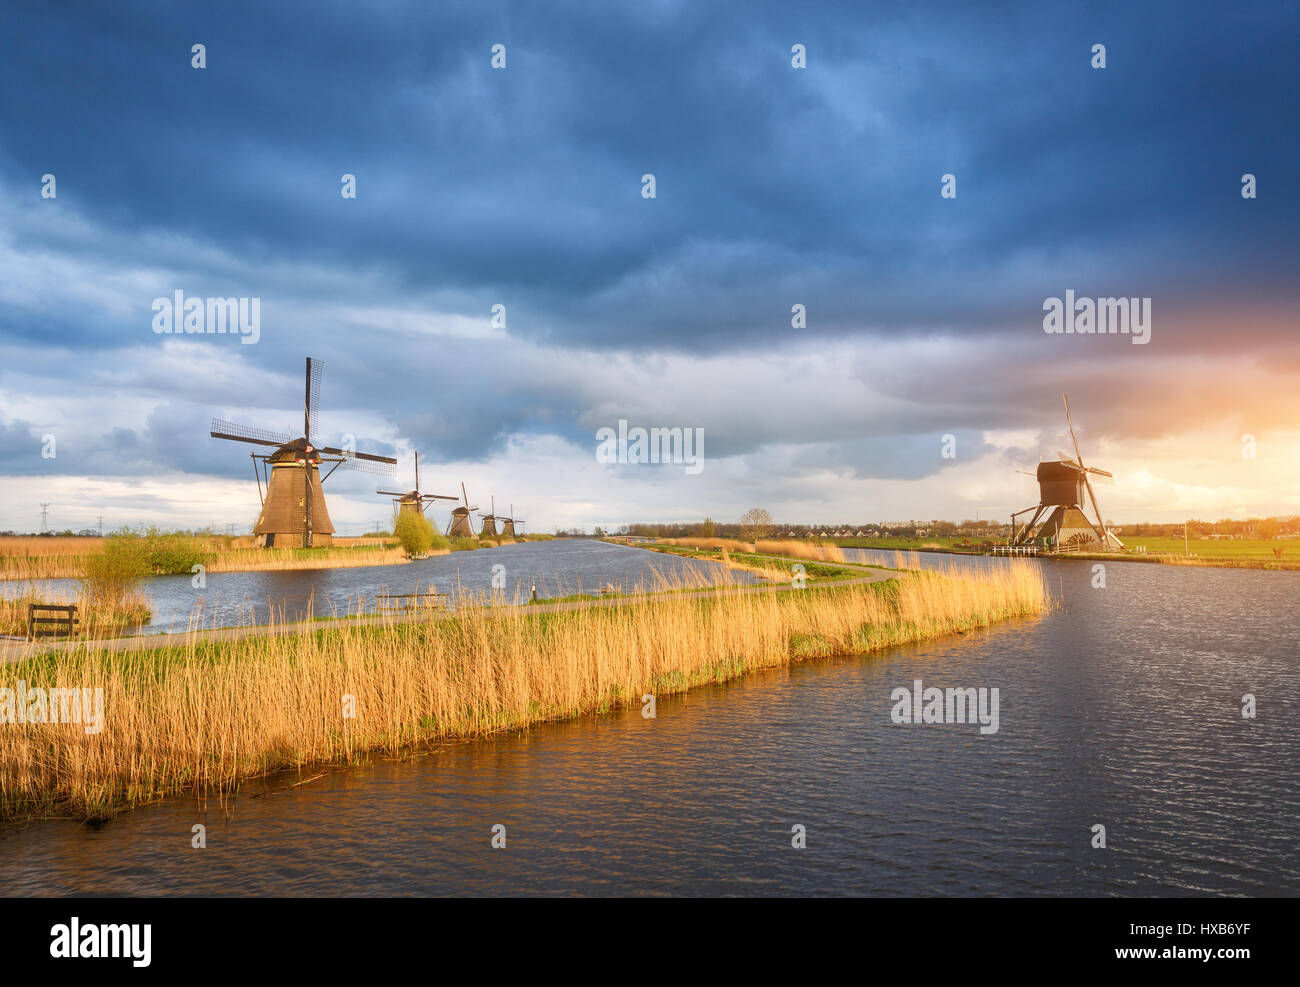 Erstaunliche Windmühlen. Rustikale Landschaft mit traditionellen holländischen Windmühlen in der Nähe von Wasserkanälen und blauen Wolkenhimmel und gelben Sonnenlicht. Farbenprächtigen Sonnenuntergang in Stockfoto